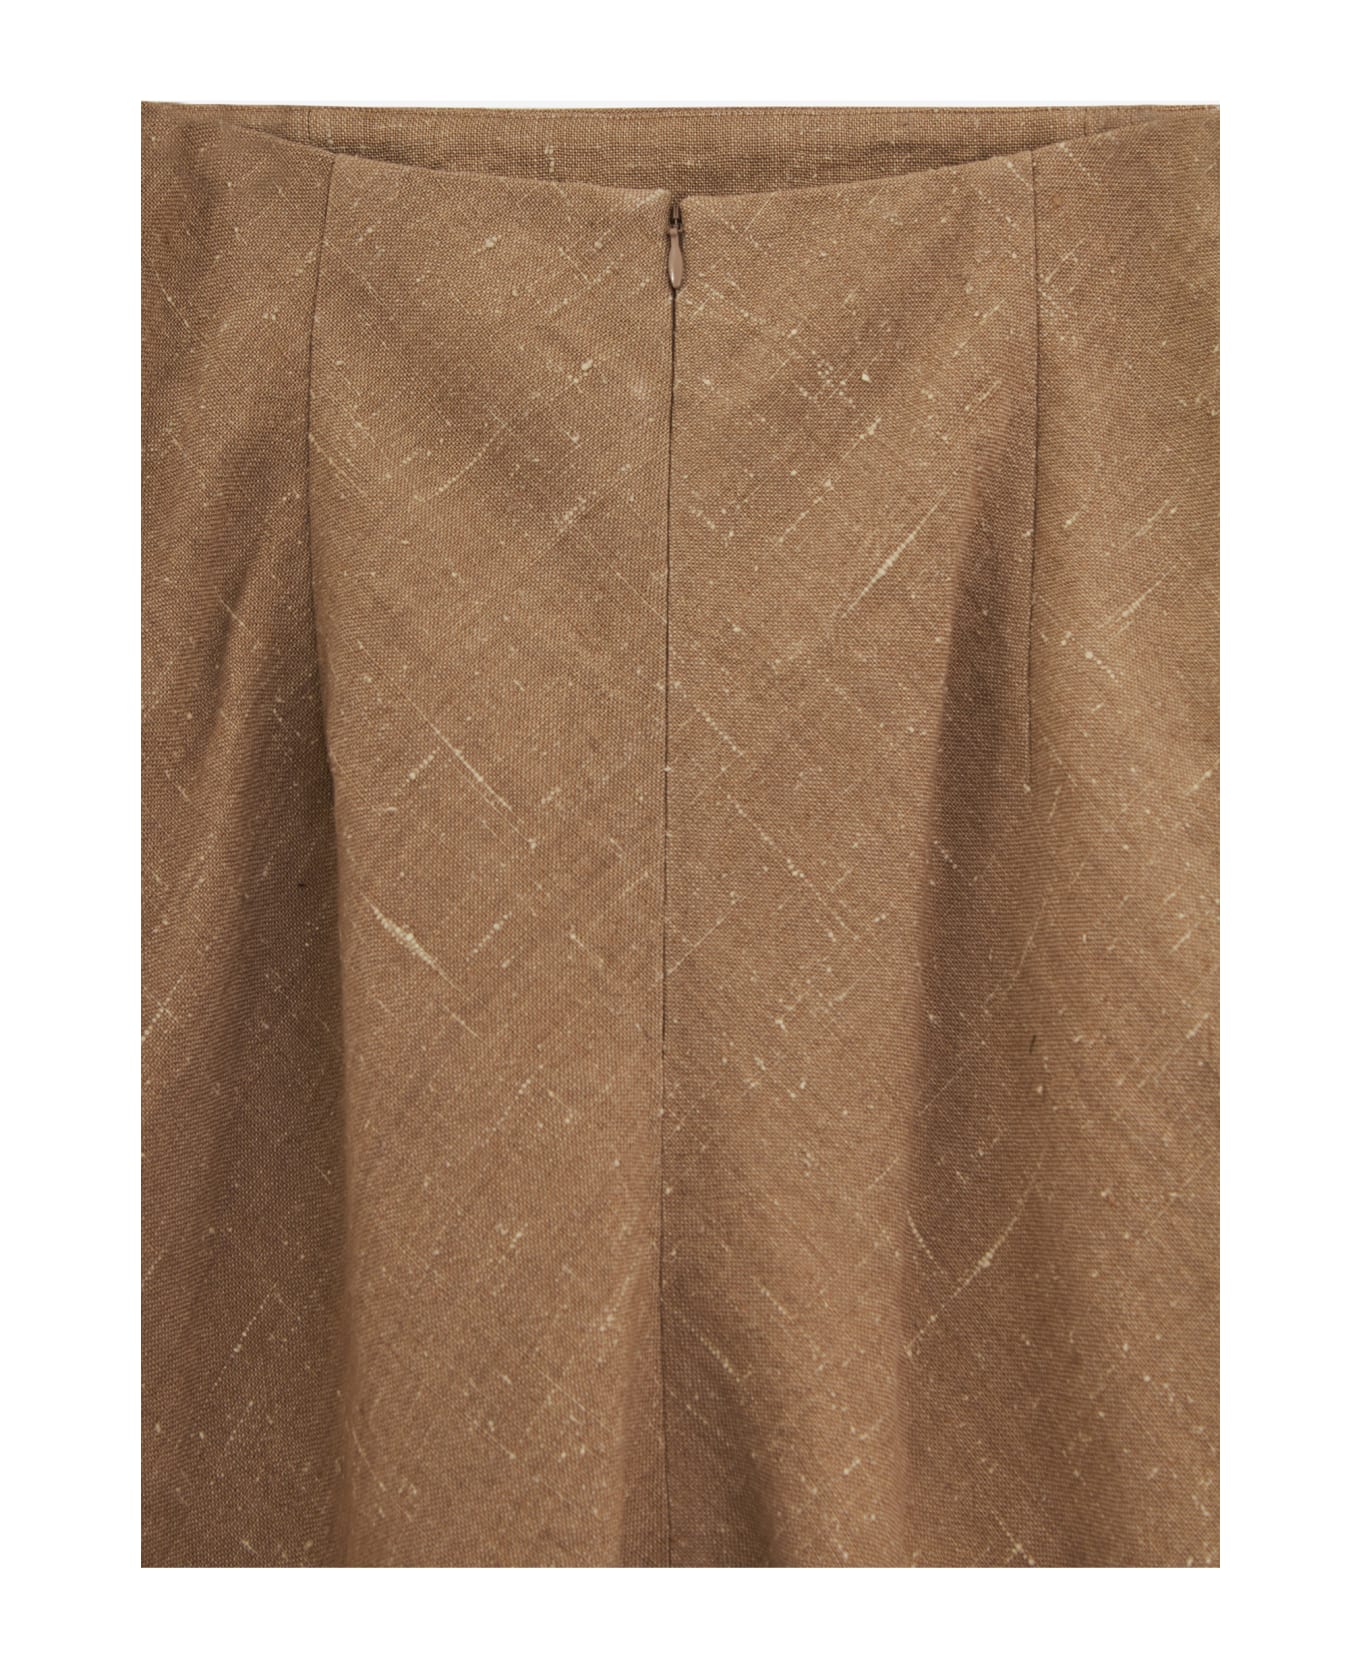 Auralee Skirt - brown